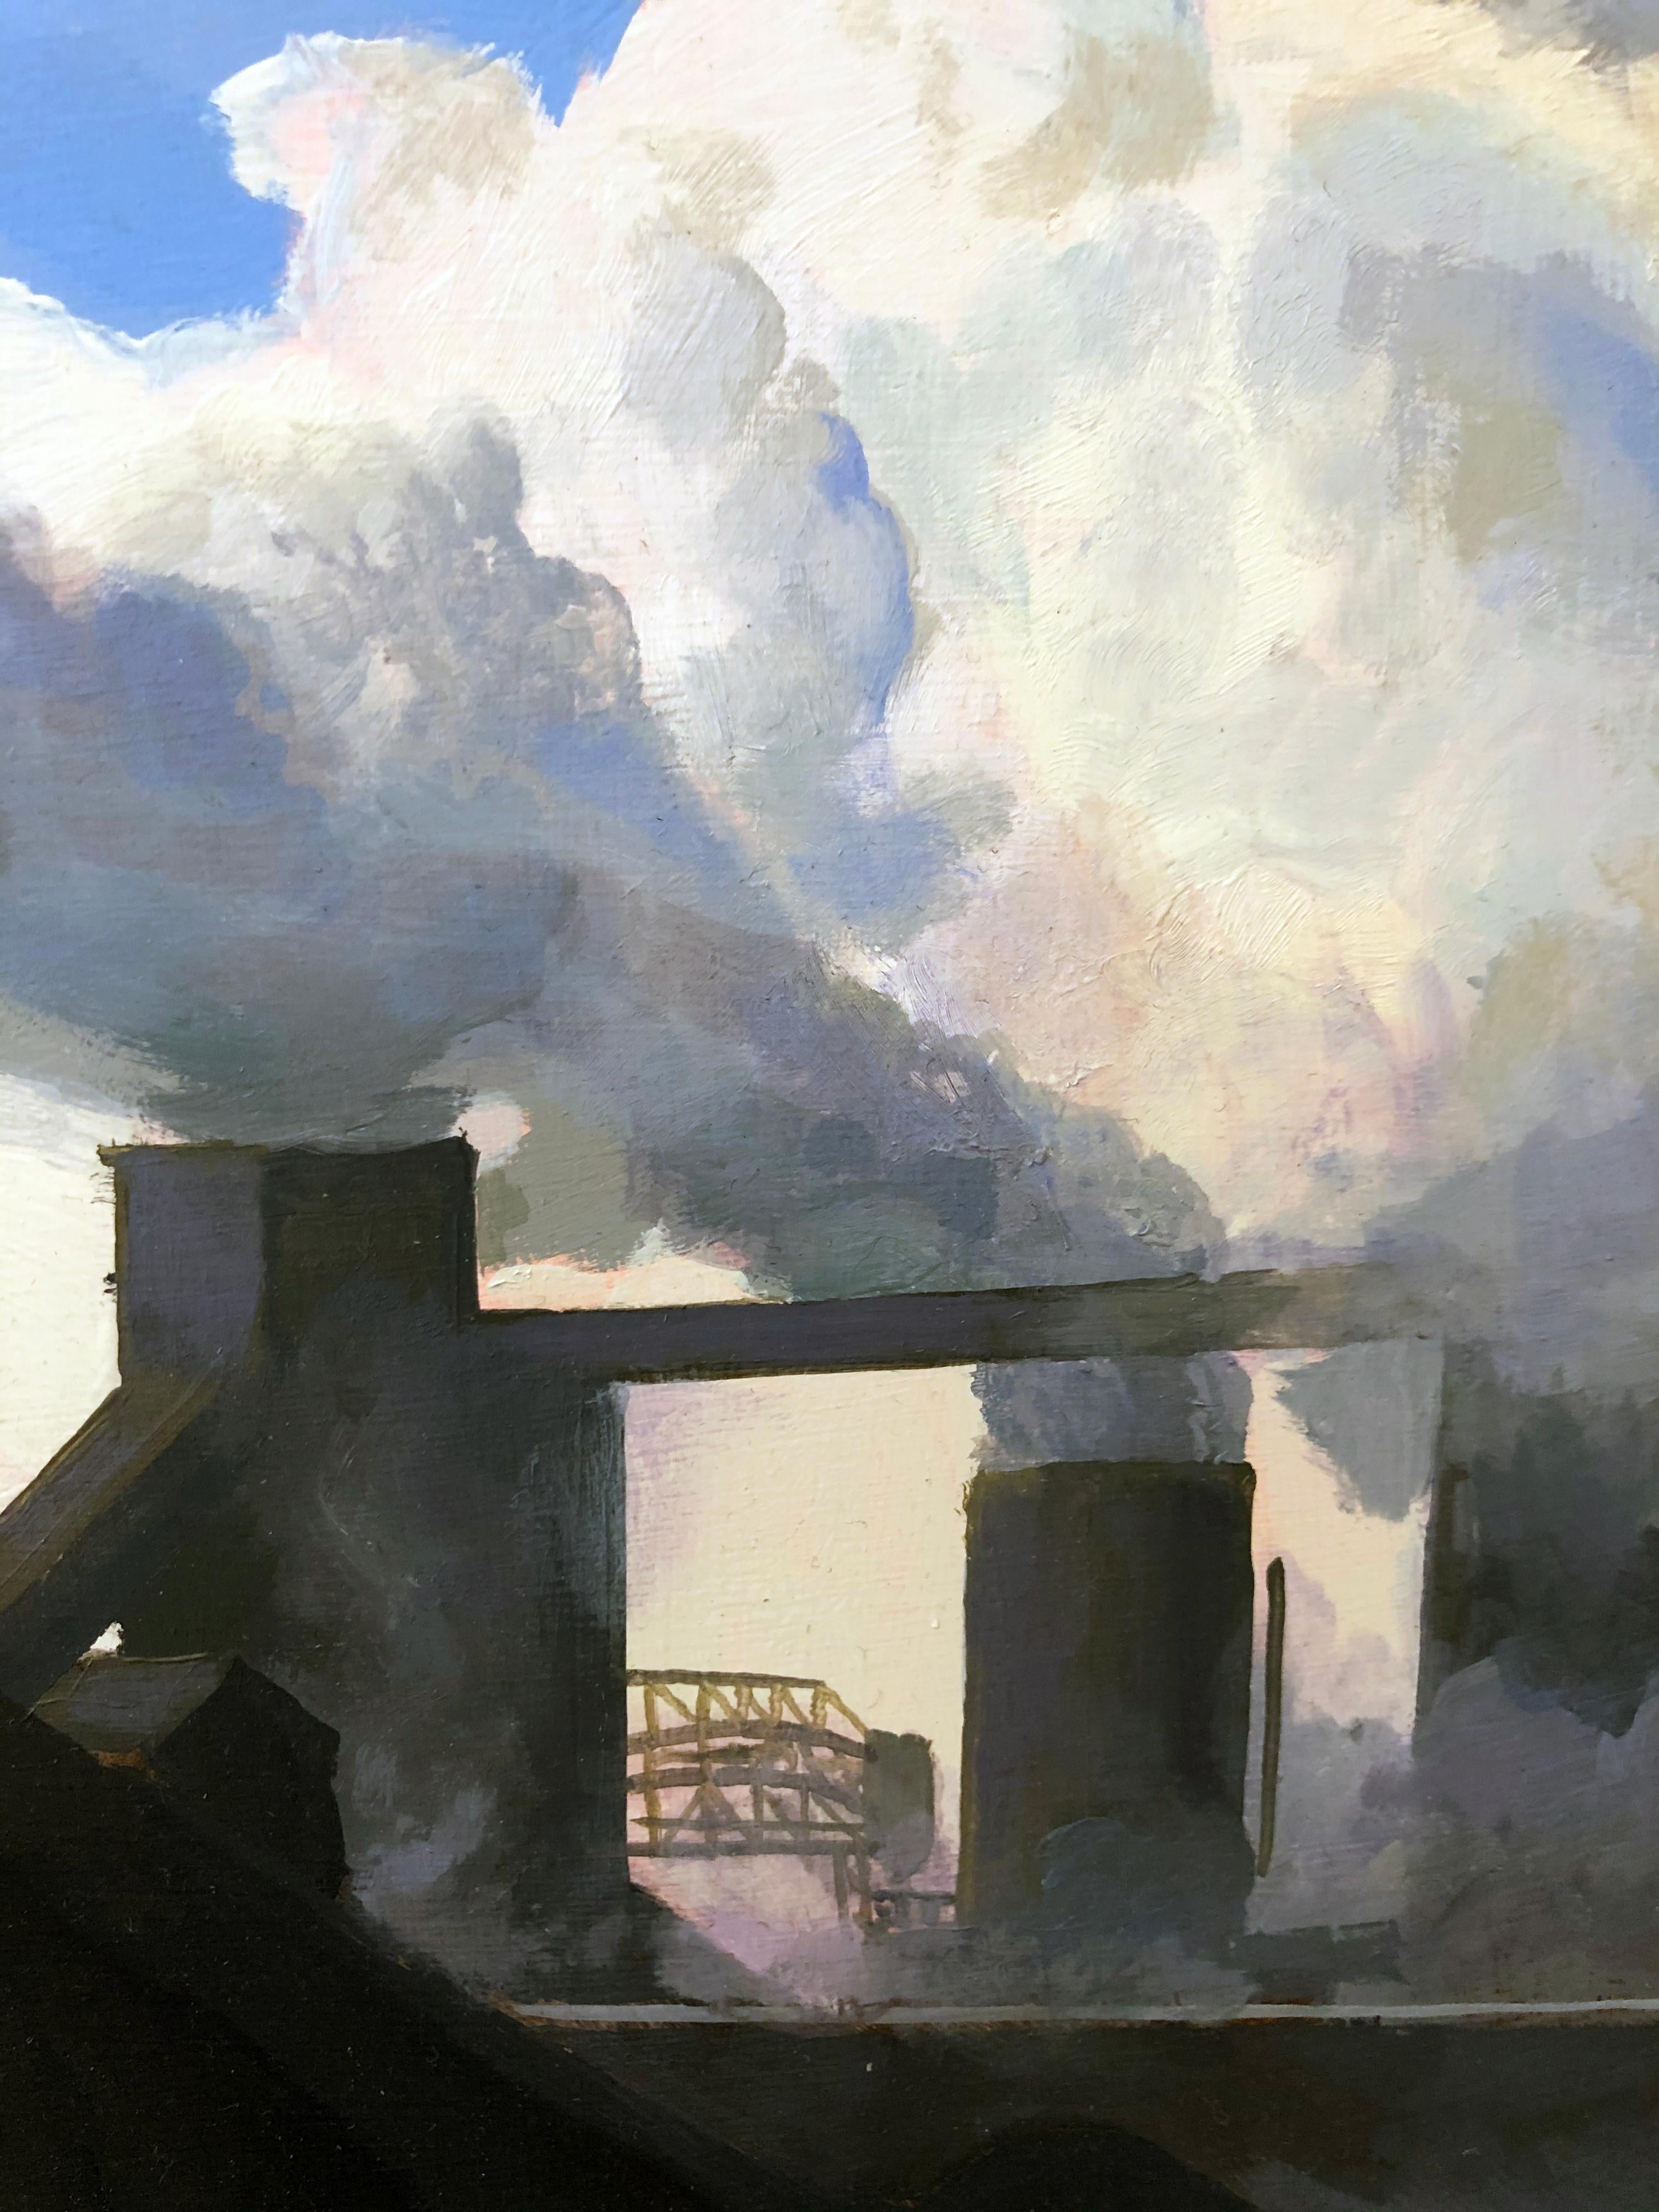 Area de protection, emplacements de fumée à vapeur, bâtiments industriels et charbon, huile sur panneau - Noir Landscape Painting par Art Chartow